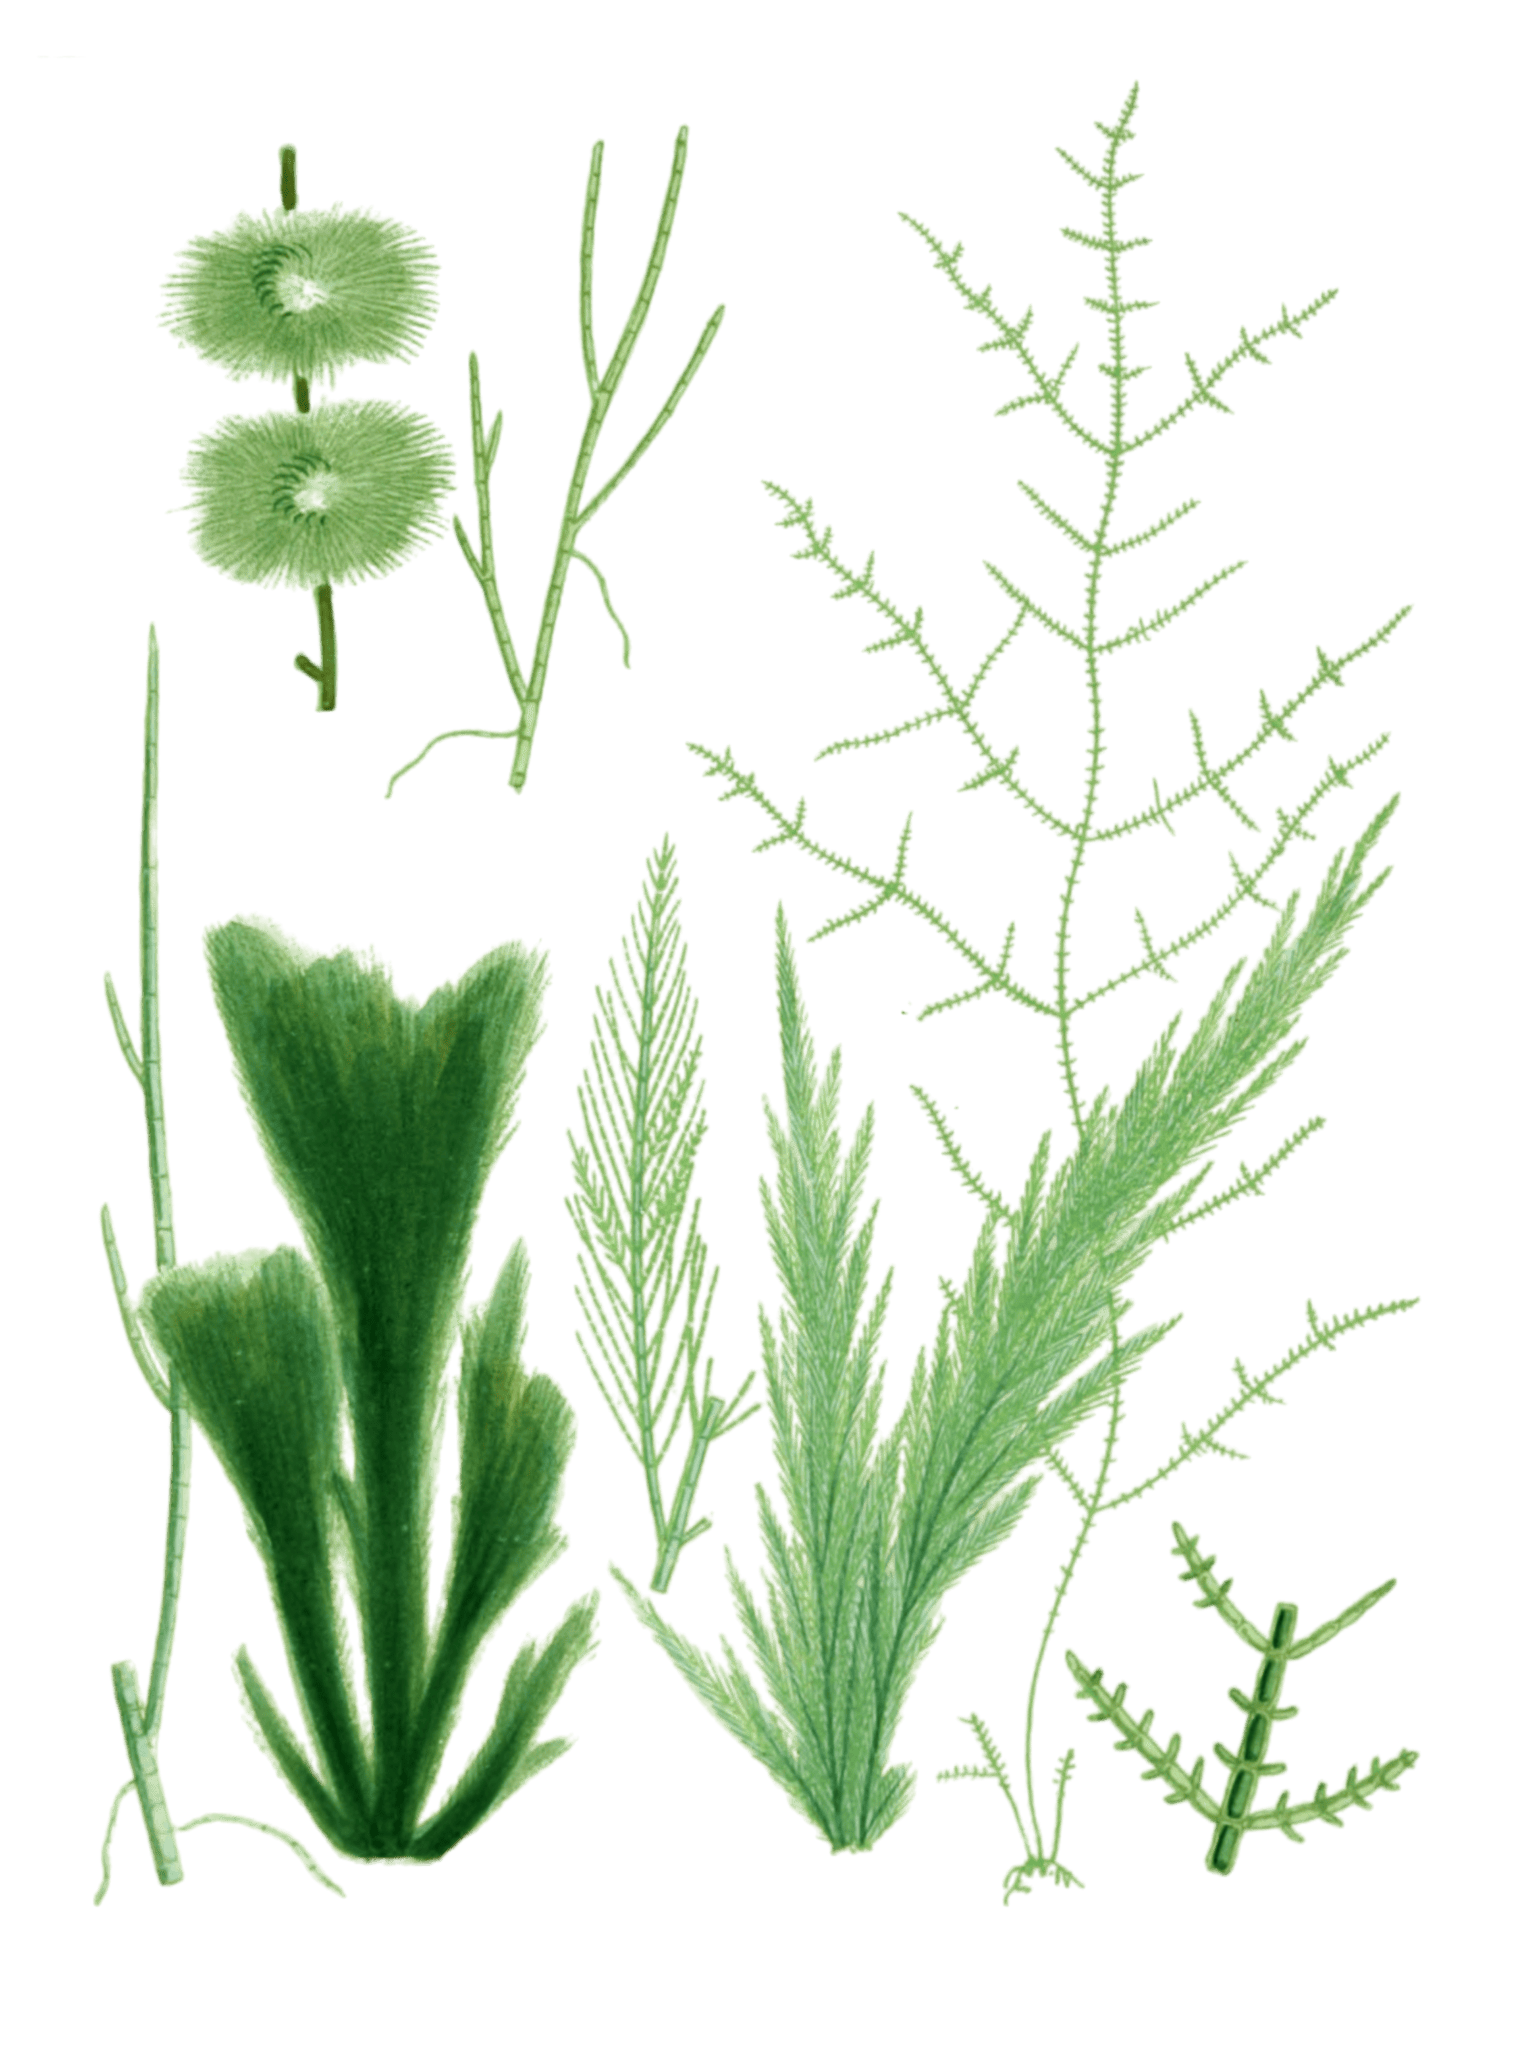 Various Green Seaweed illustration 3 - Free Vintage Illustrations